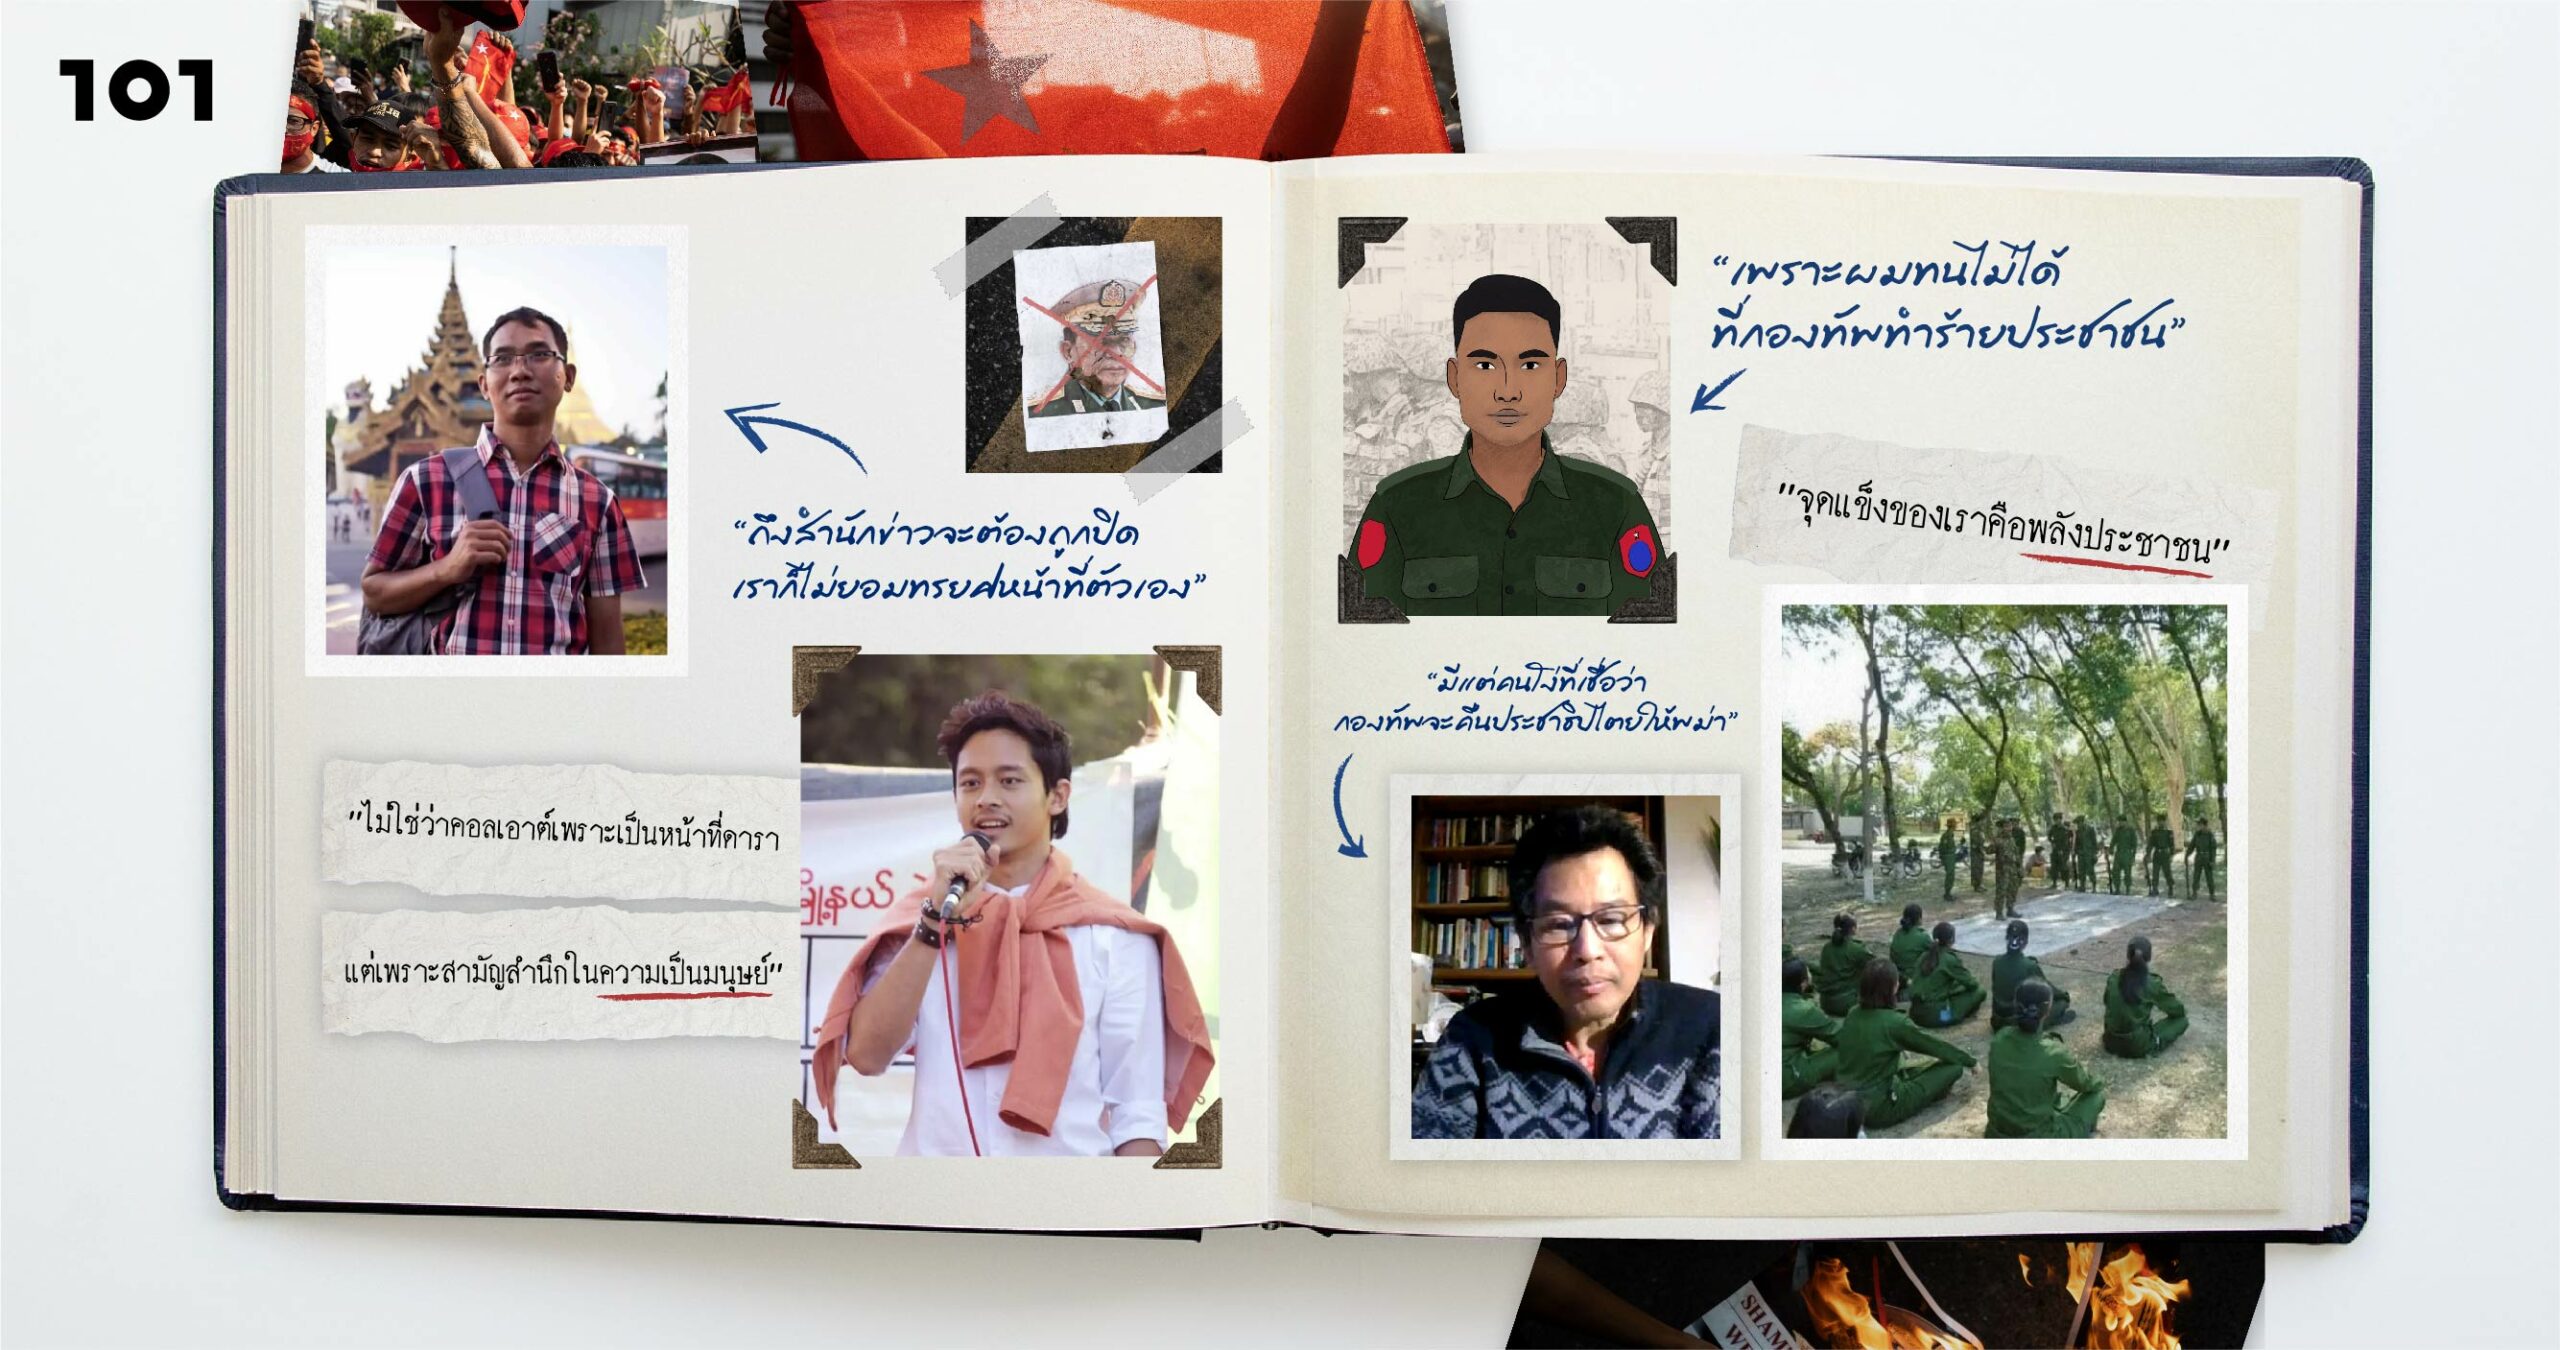 ถ้าไม่สู้ก็อยู่อย่างทาส: หลากเสียงจากสามัญชนพม่า หลายวิถีทางแห่งการต่อสู้